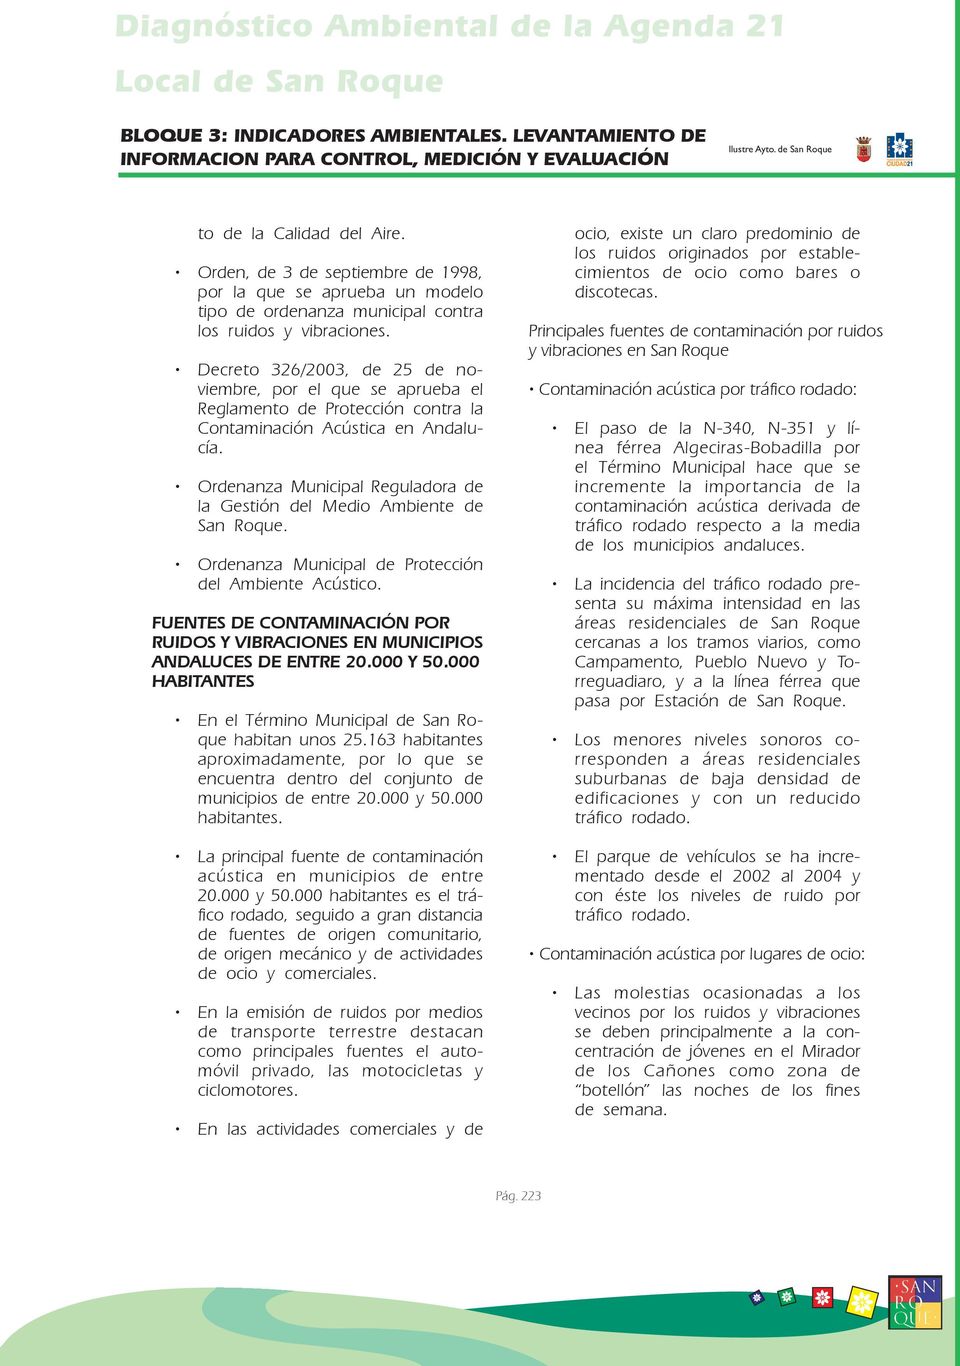 Ordenanza Municipal Reguladora de la Gestión del Medio Ambiente de San Roque. Ordenanza Municipal de Protección del Ambiente Acústico.